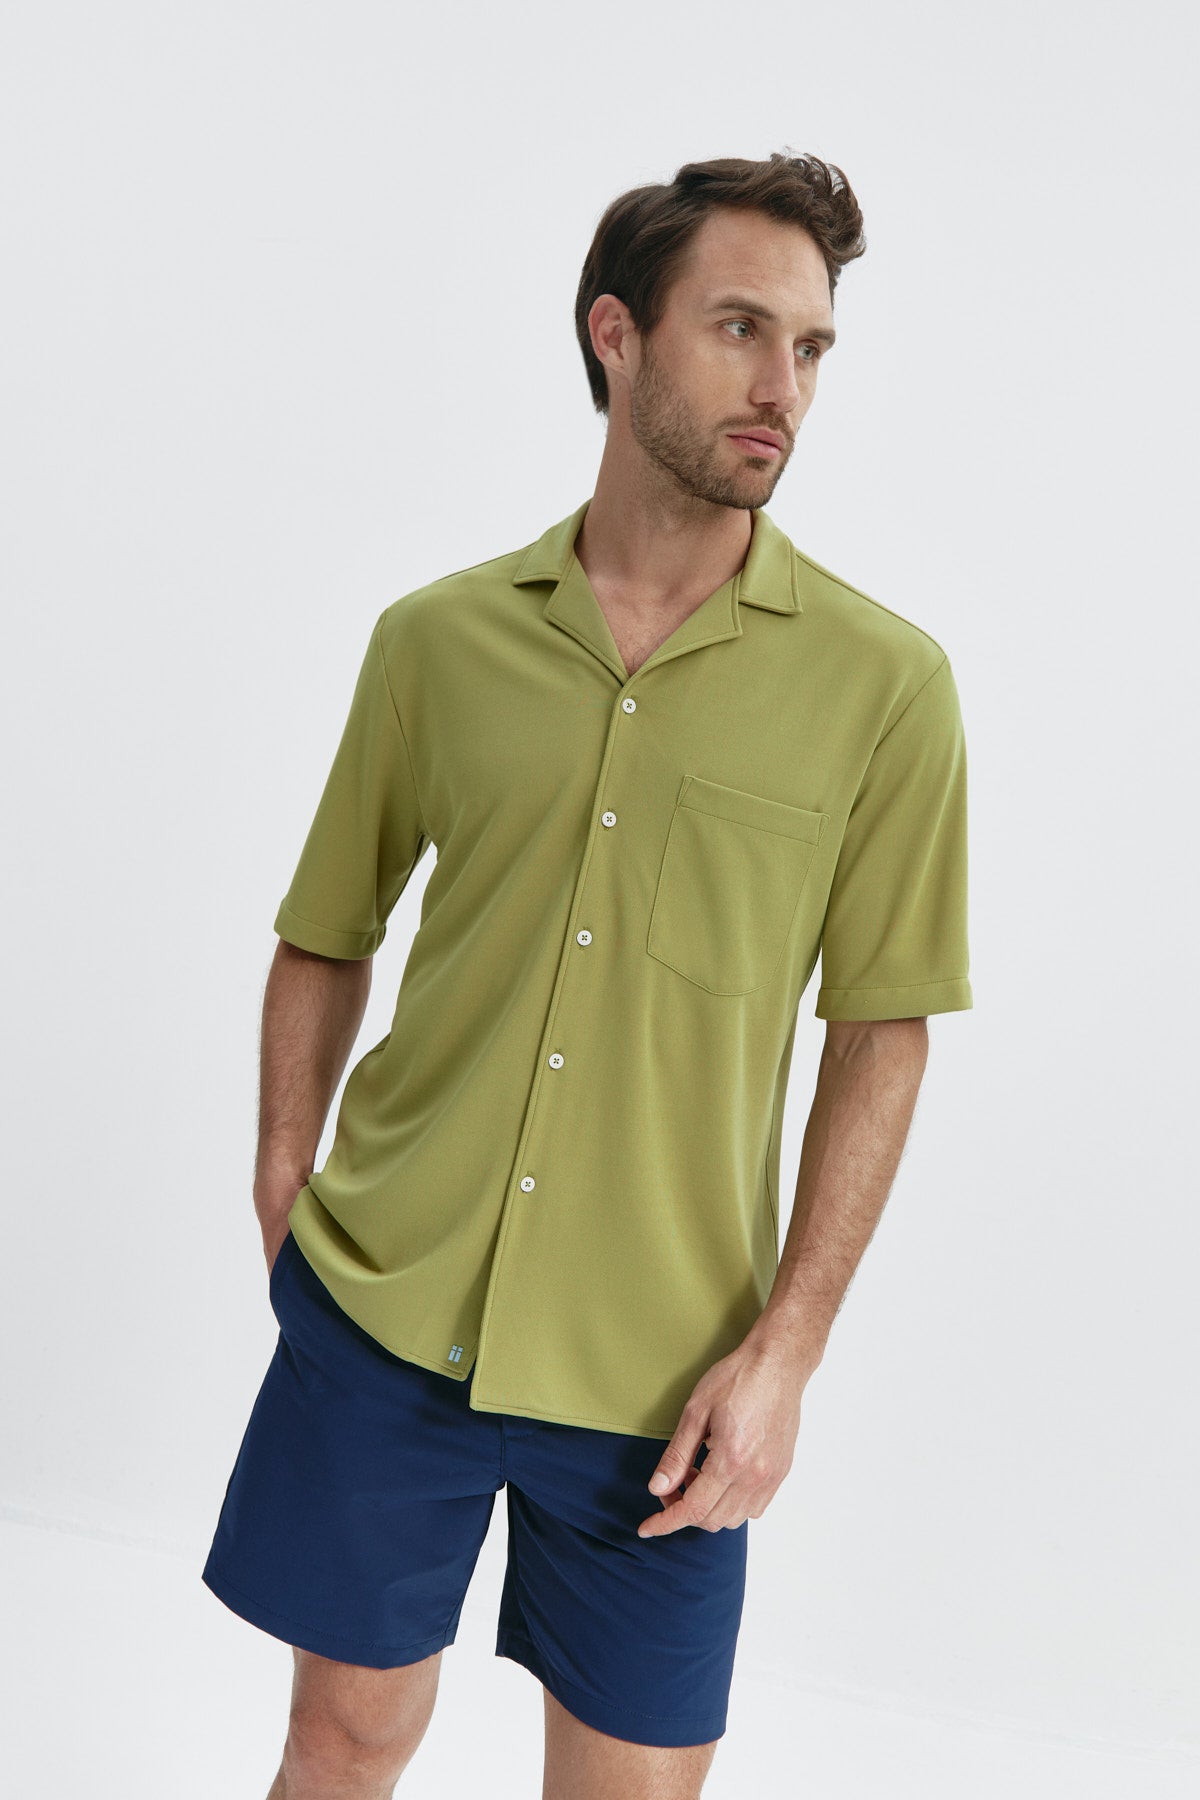 Camisa manga corta verde manzana de Sepiia, fresca y cómoda, perfecta para el verano. Foto de frente.